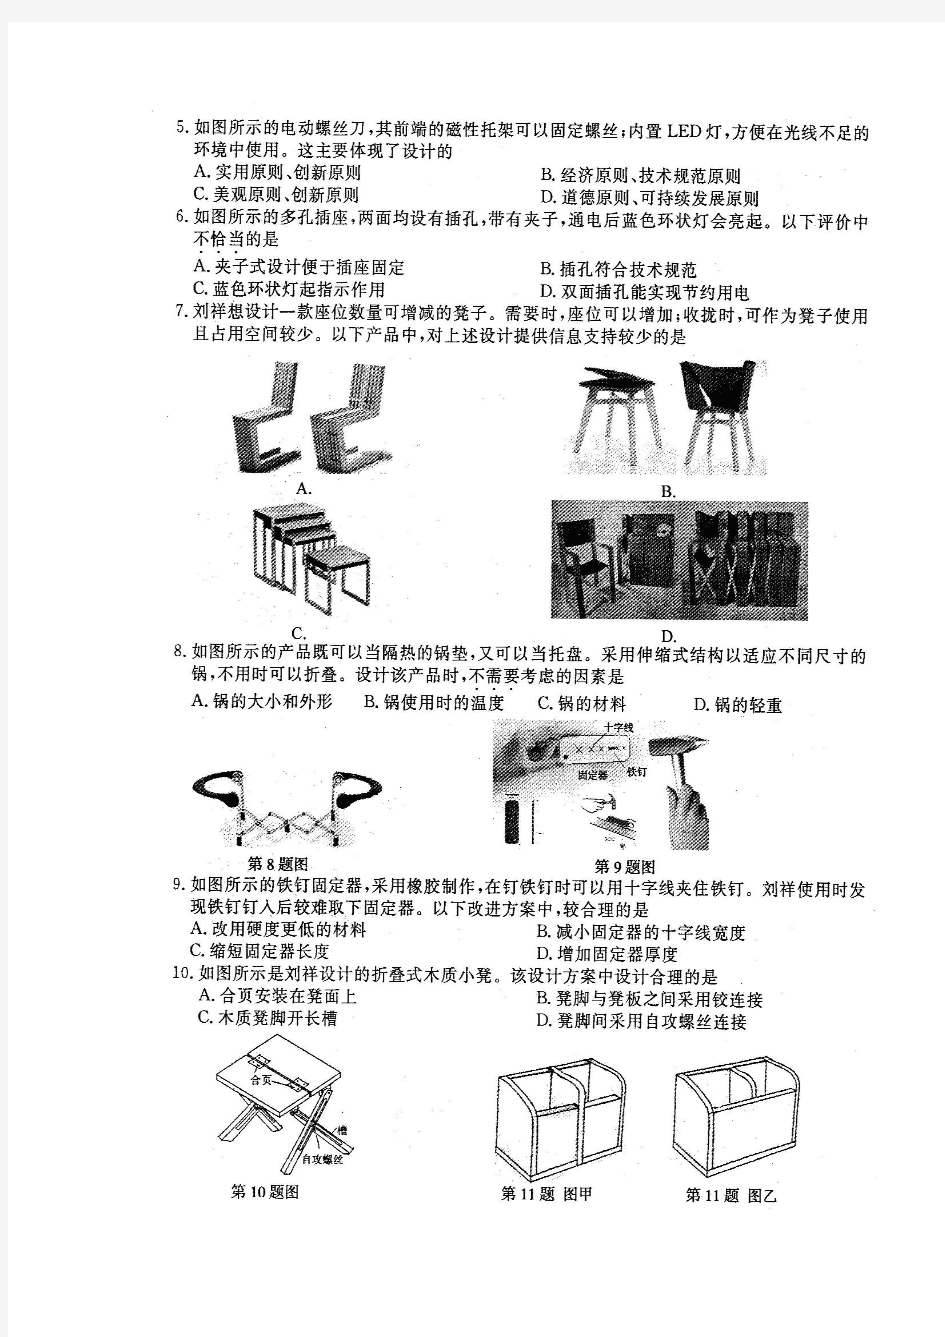 2012年6月浙江省通用技术会考试卷清晰扫描版